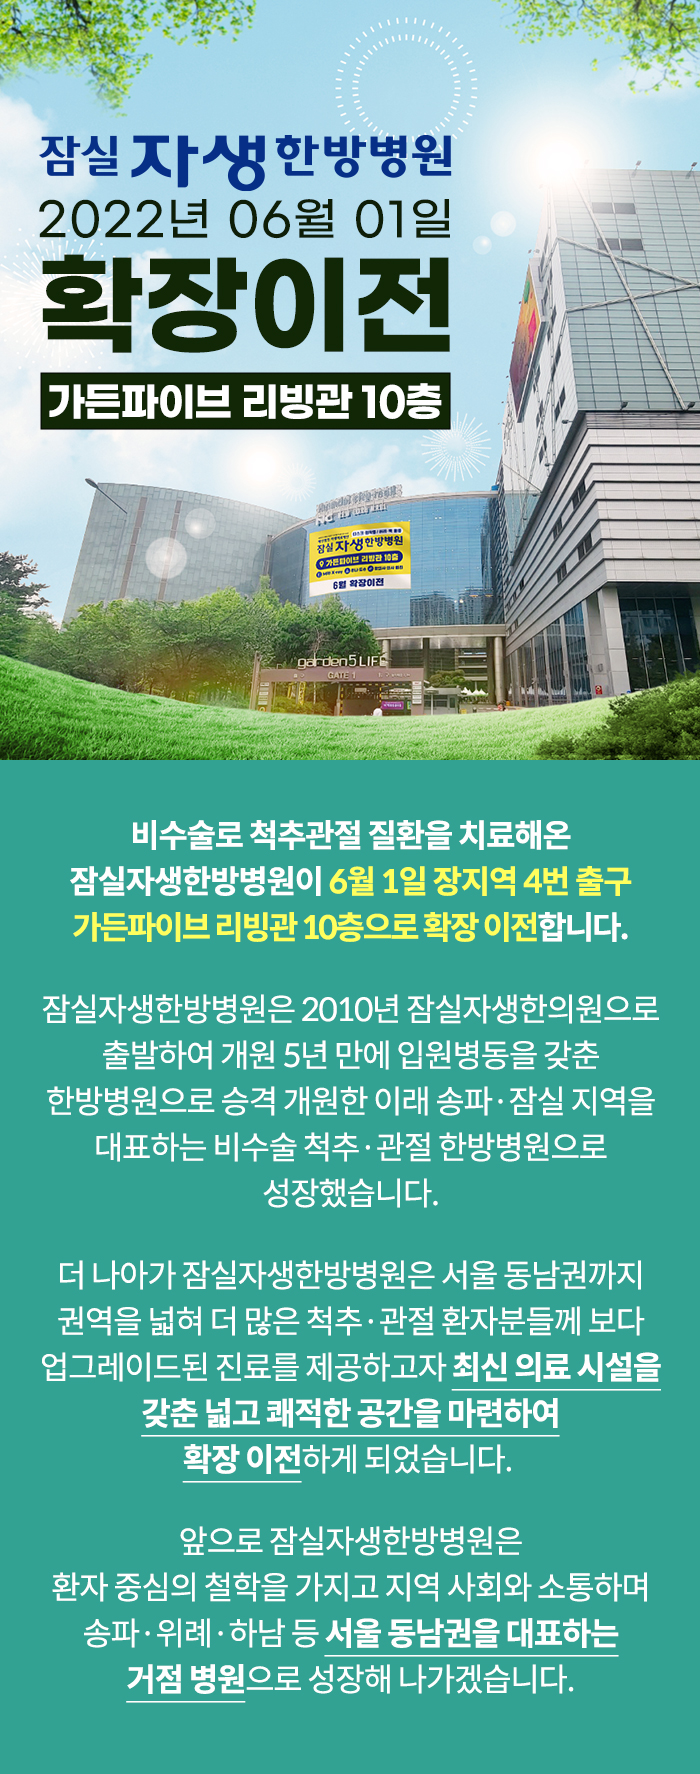 잠실자생한방병원 2022년 6월 1일 확장이전 - 가든파이브 리빙관 10층